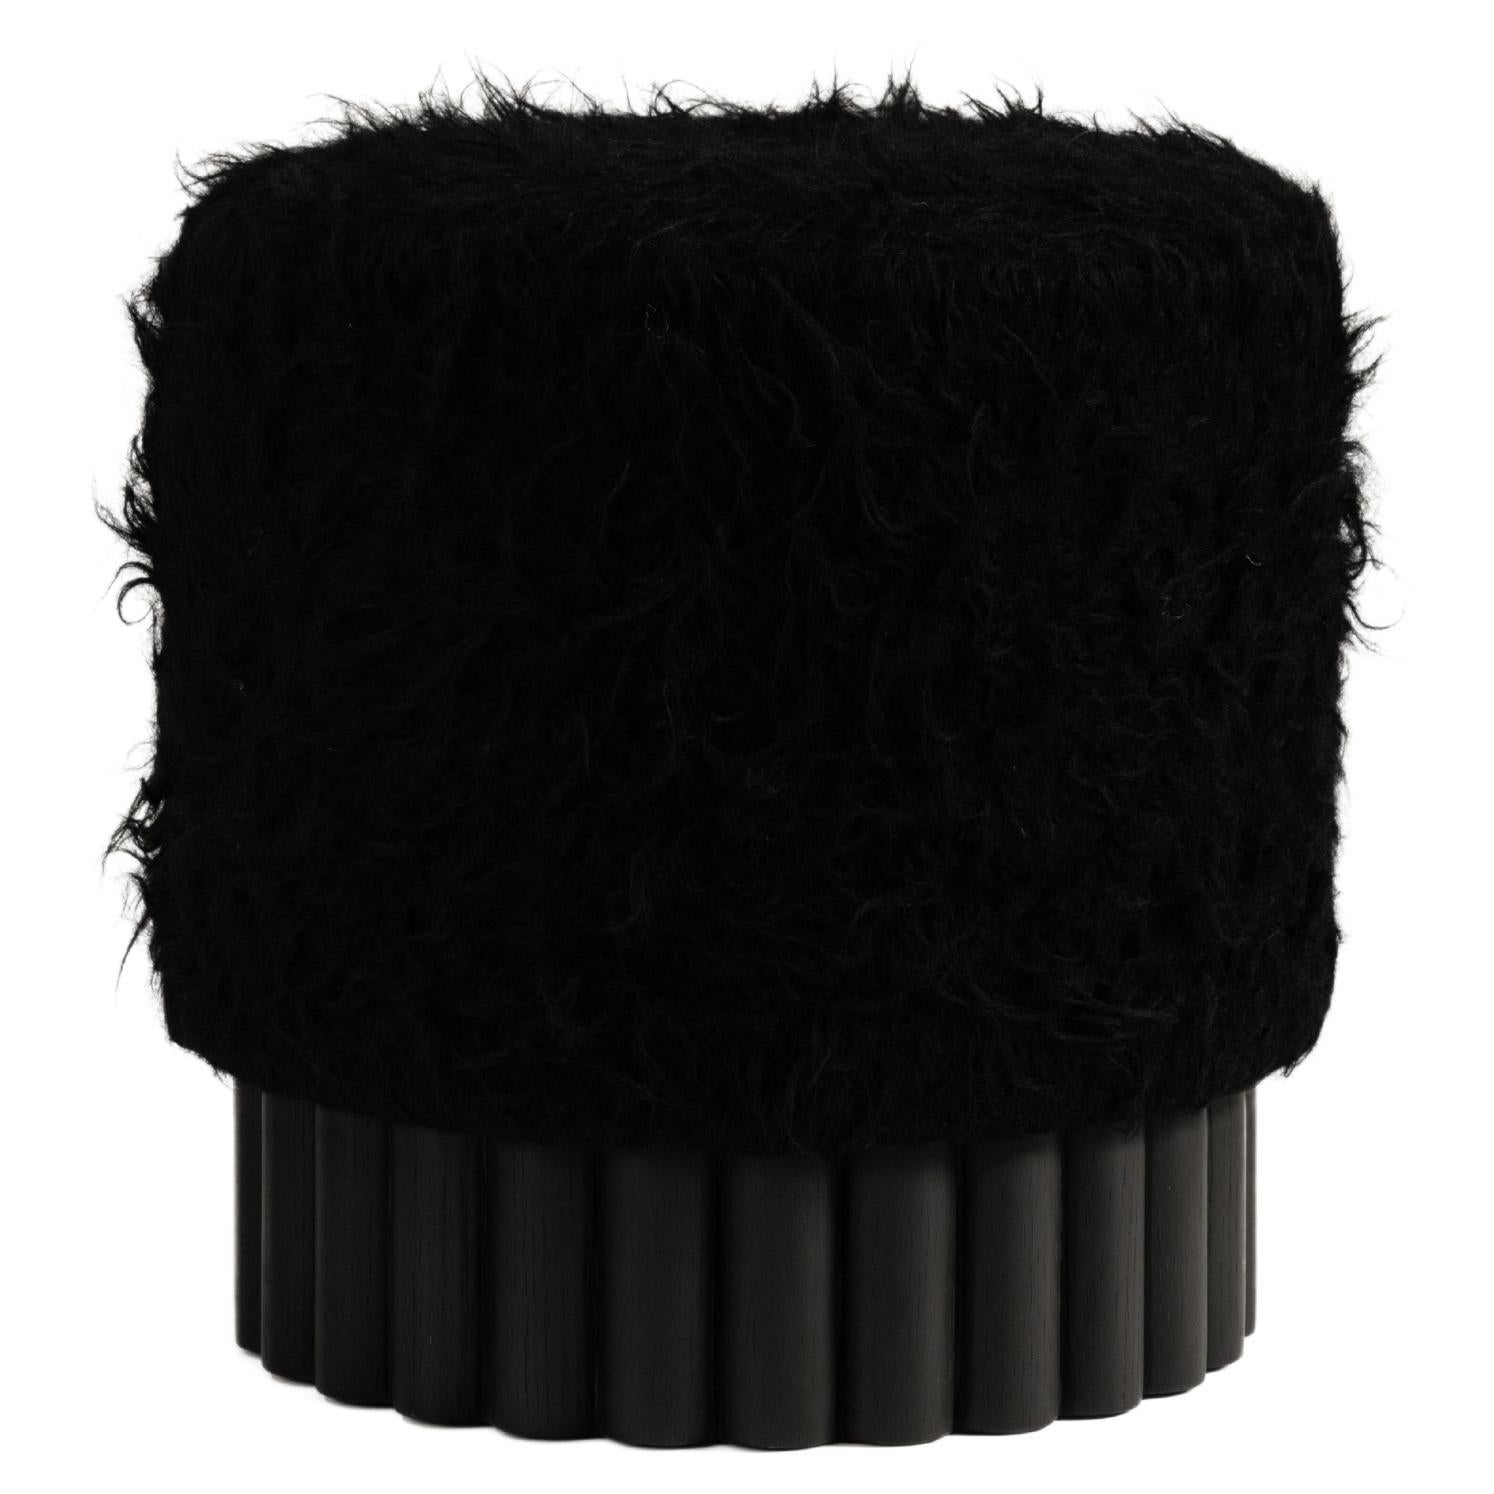 Loto Pouf in Black Shag Wool by Peca For Sale